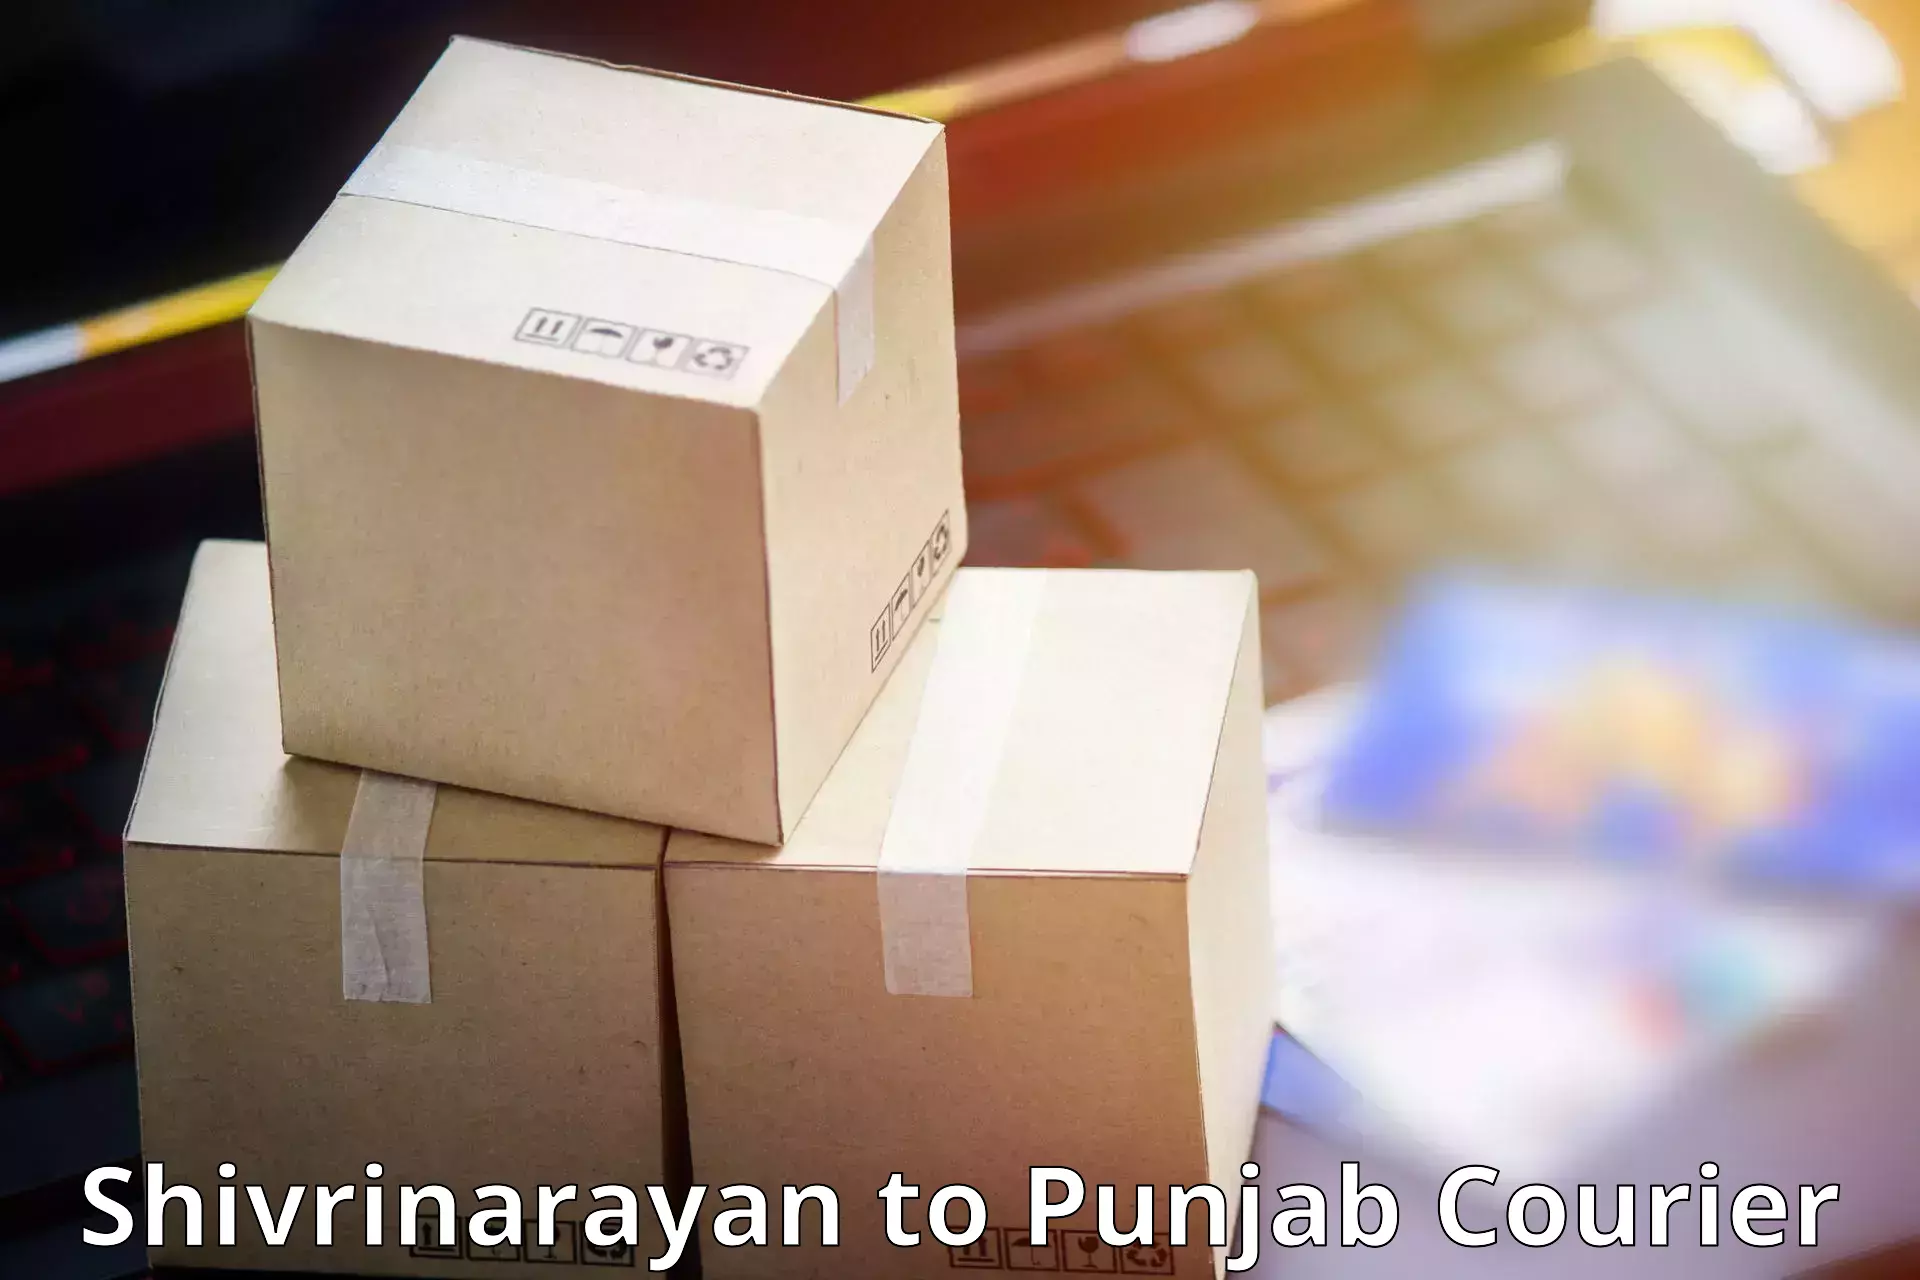 Express postal services Shivrinarayan to Punjab